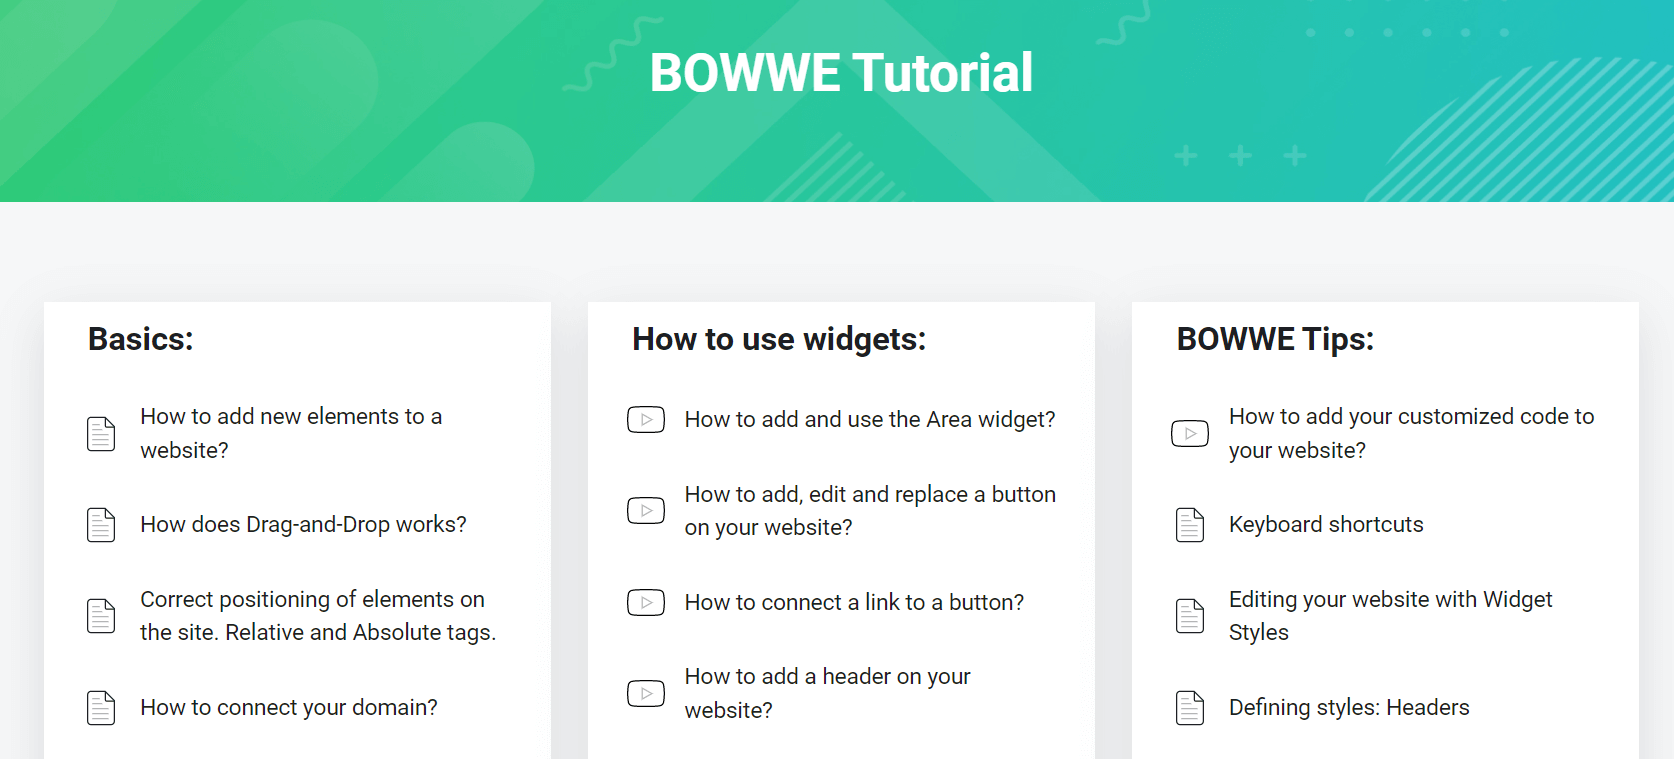 Tutoriales en el sitio web de BOWWE